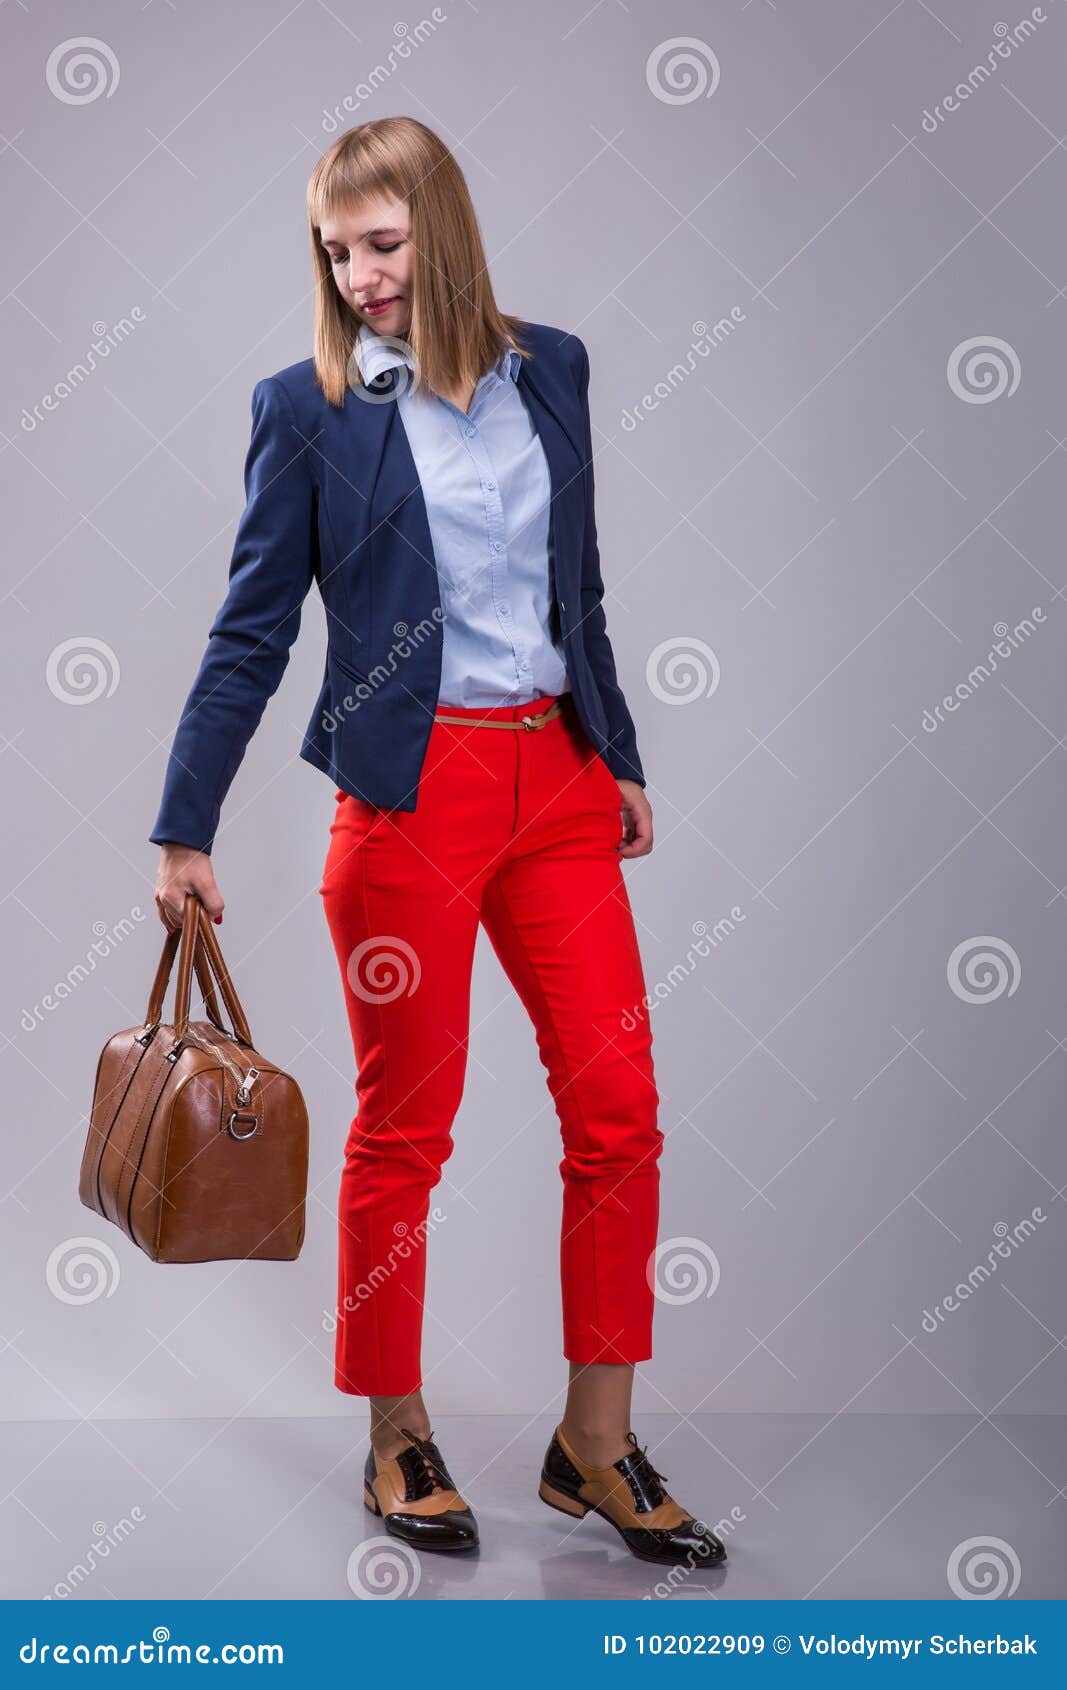 Forme La Mirada De Pantalones Rojos Vestidos Mujer, Chaqueta Azul, Bolso Marrón El Mira Un Bolso De Cuero Altura Completa Imagen archivo - Imagen de bolso, viaje: 102022909